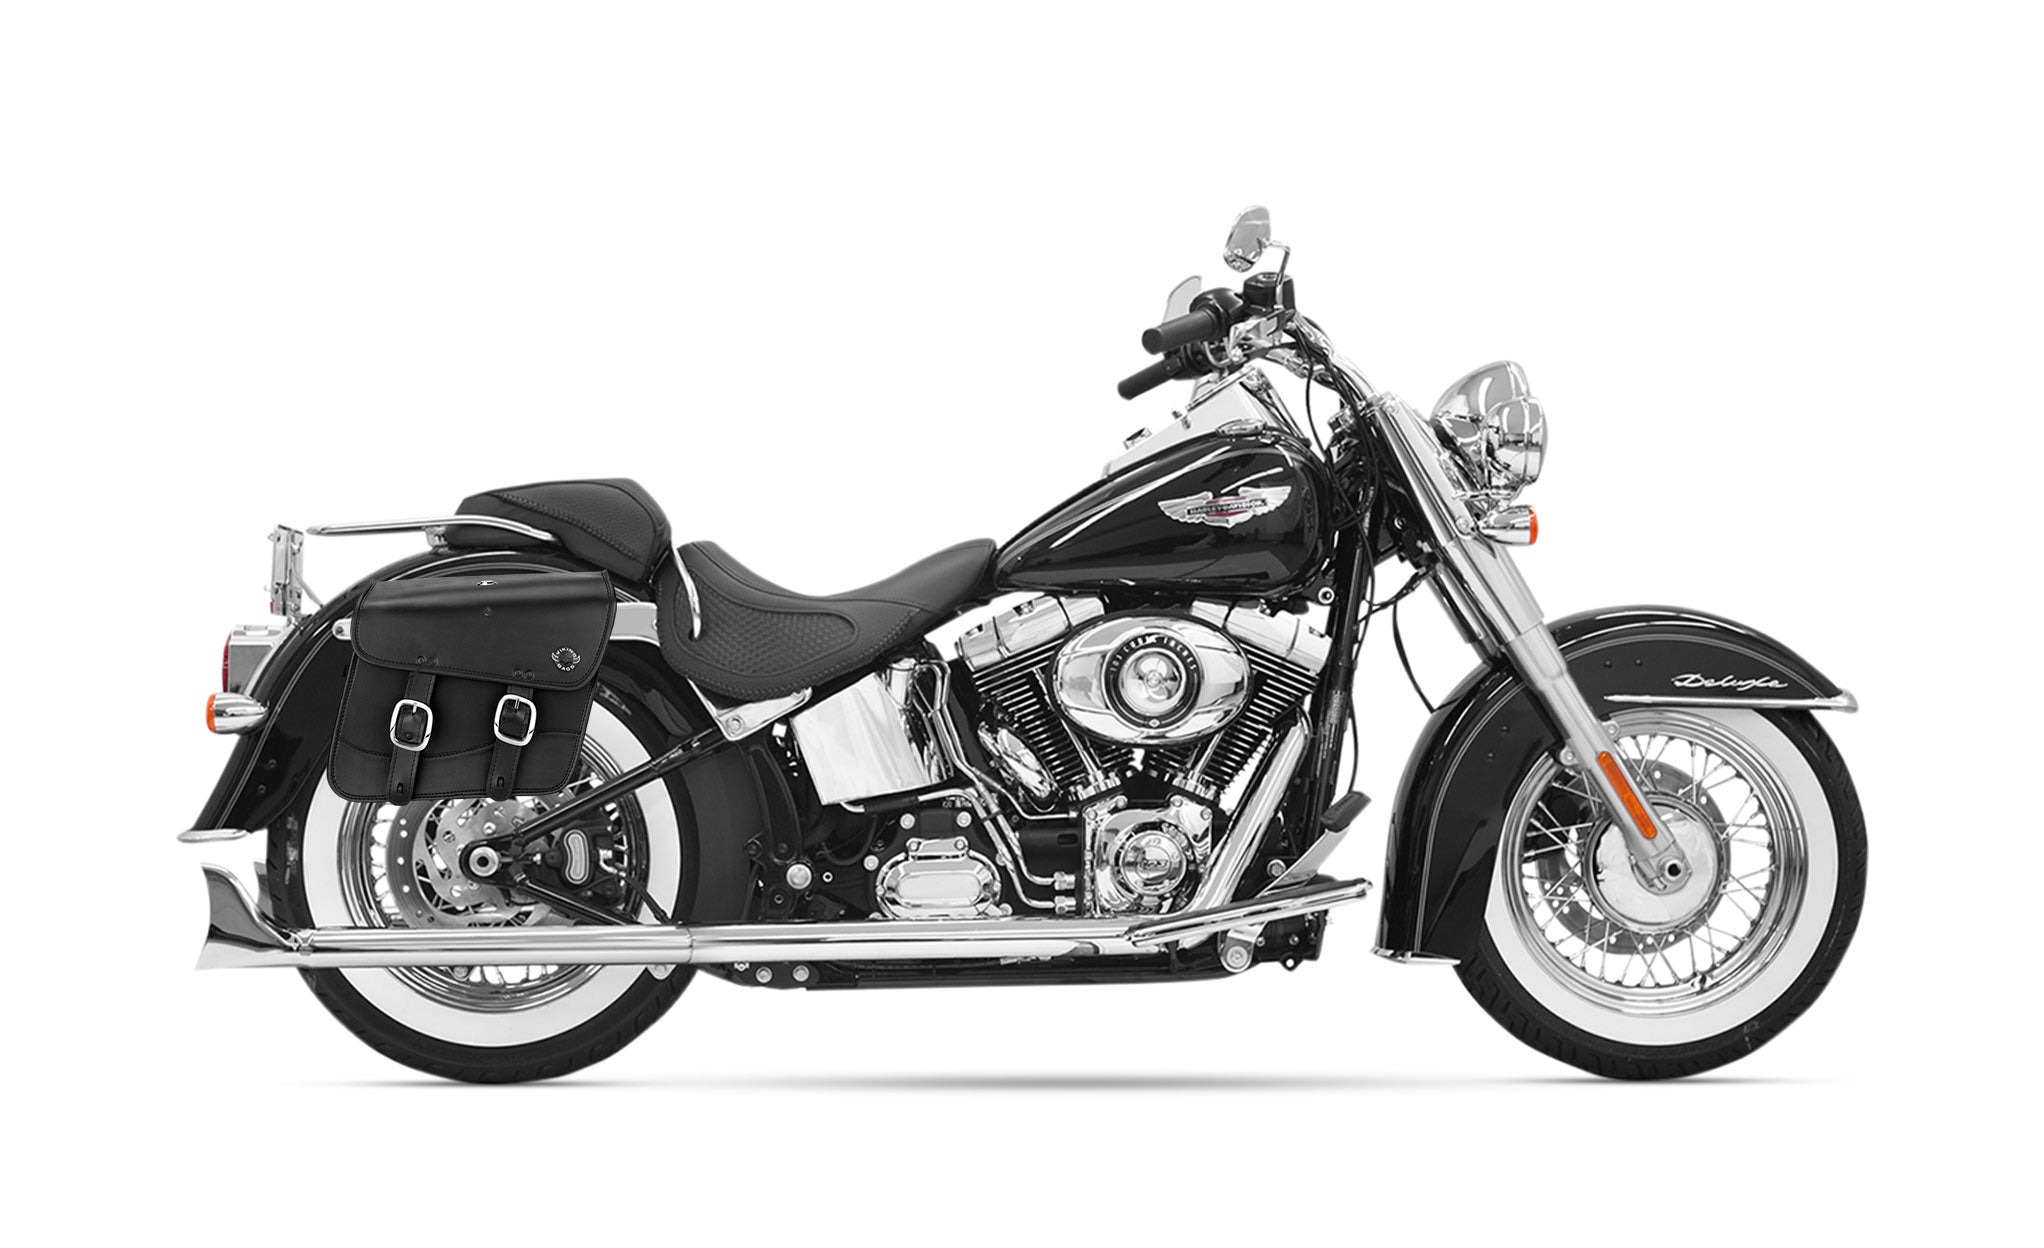 20L - Thor Medium Leather Motorcycle Saddlebags for Harley Softail Heritage FLST/I/C/CI on Bike Photo @expand